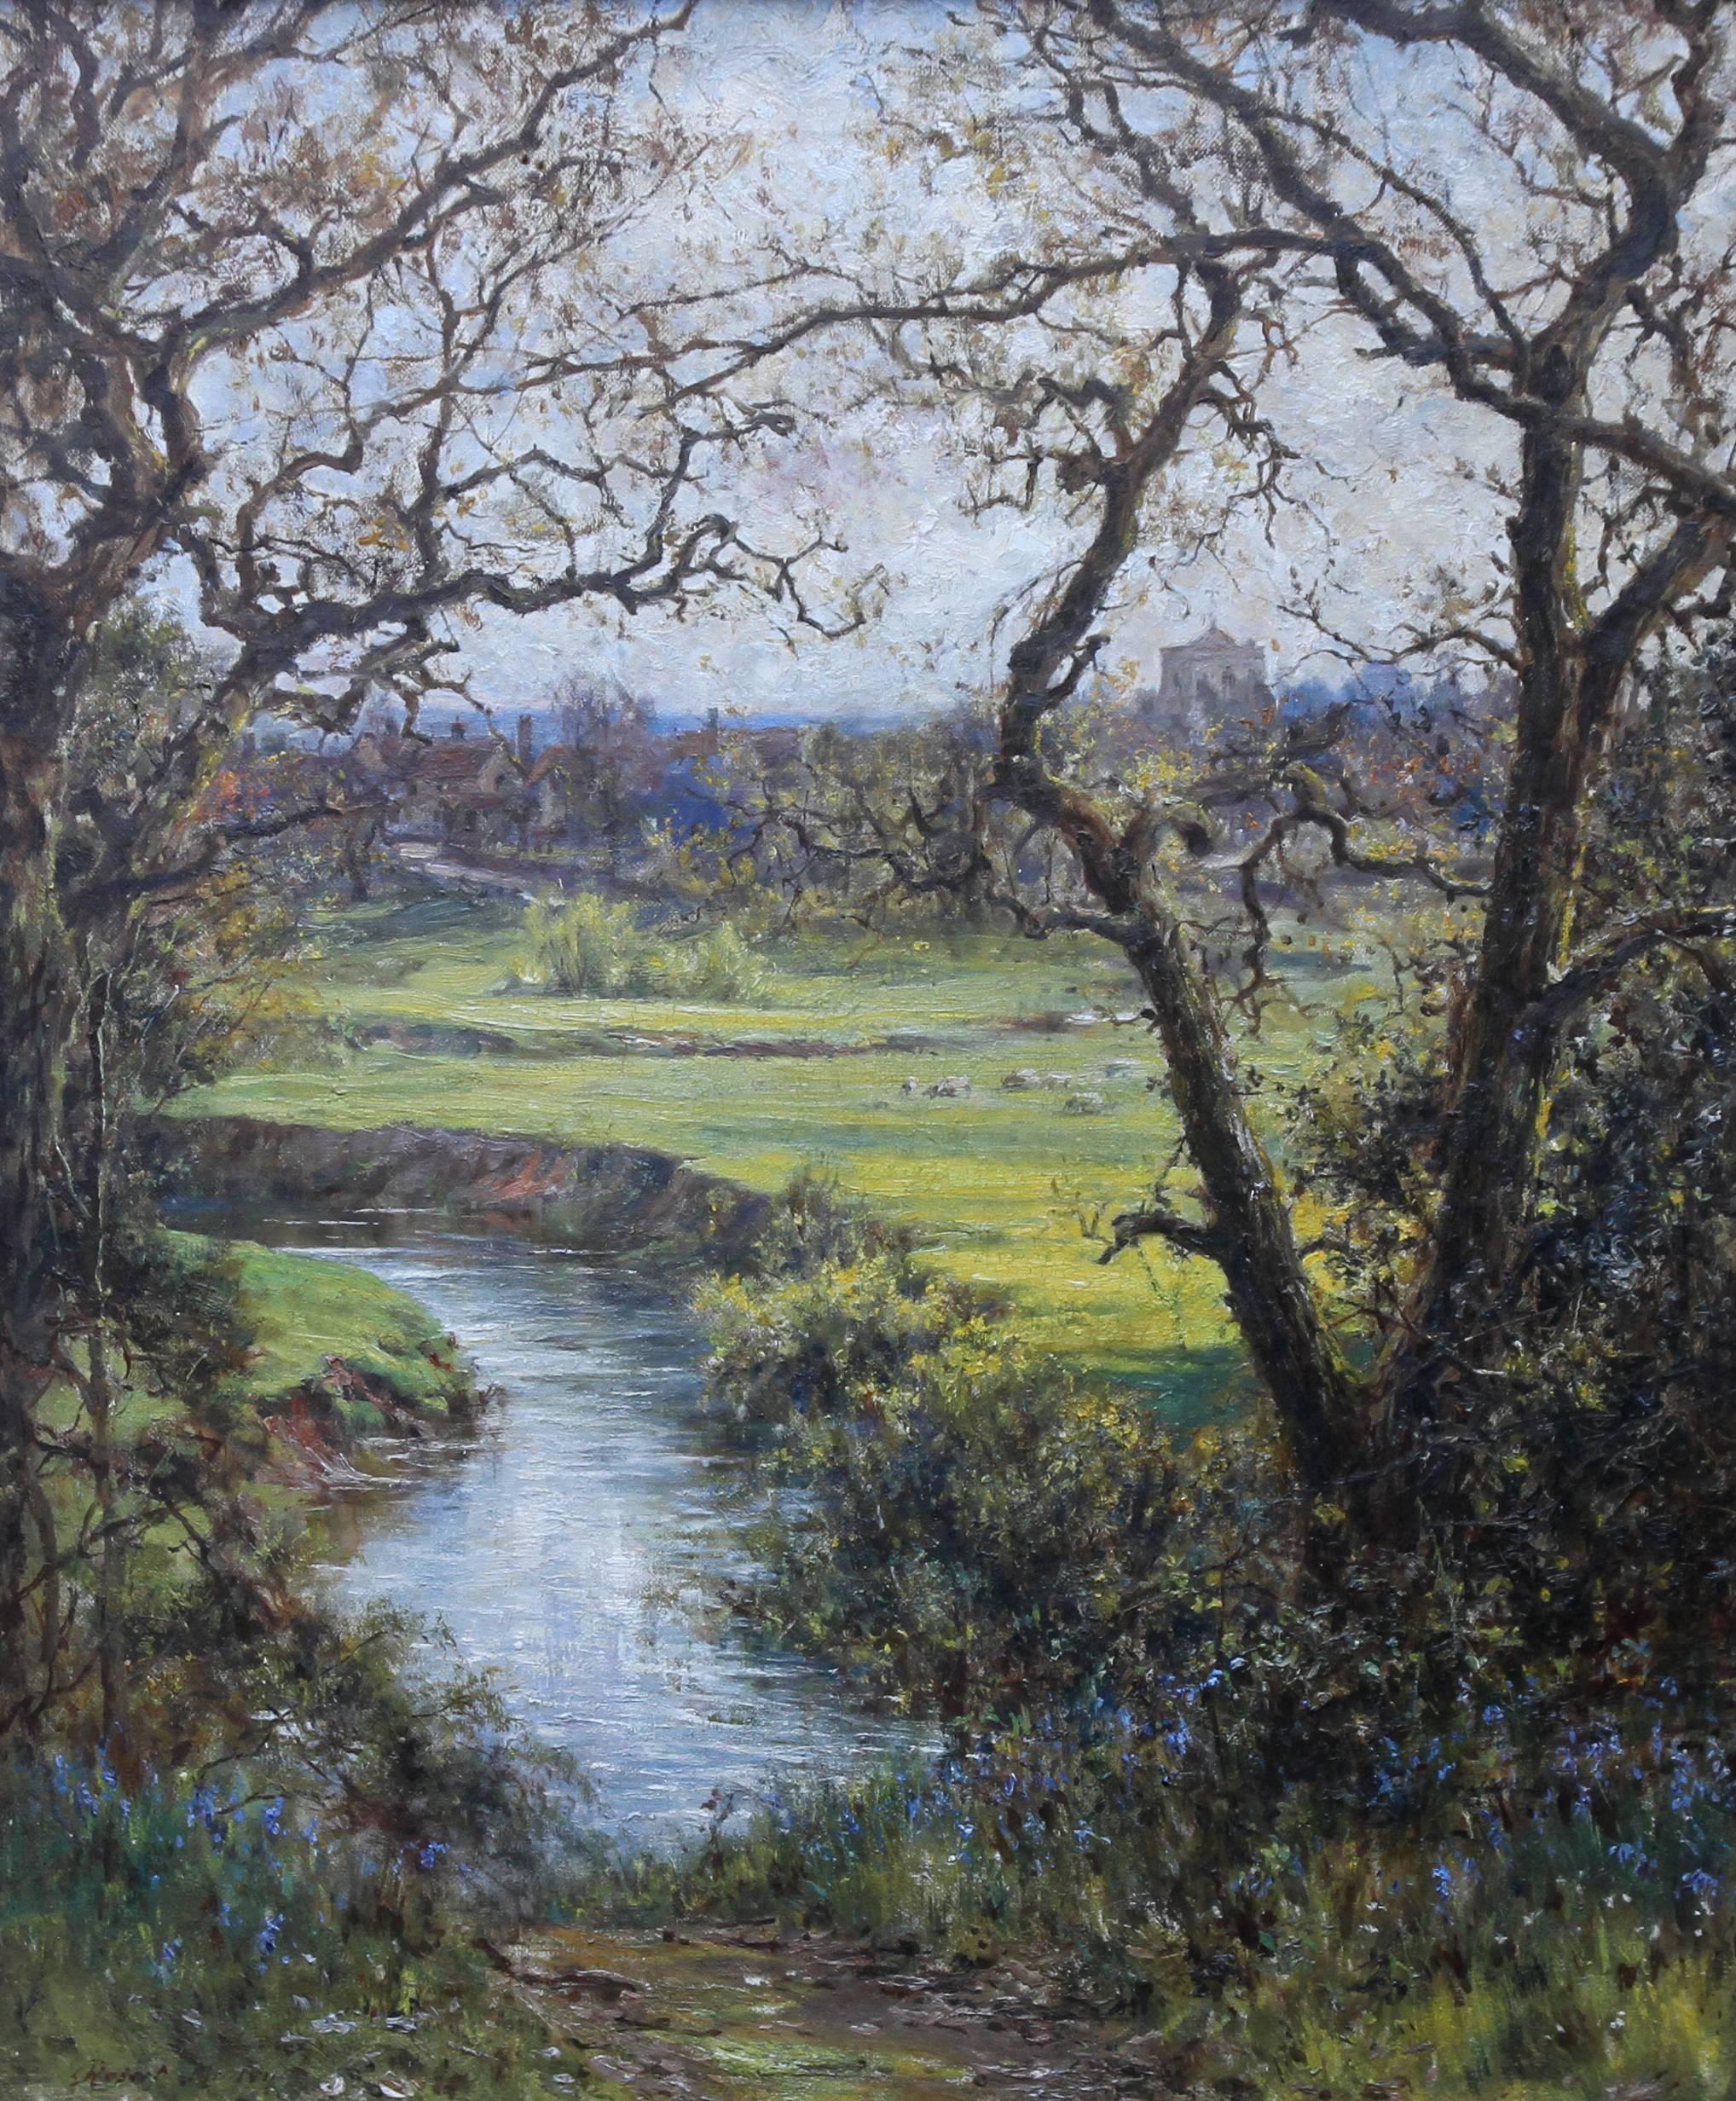 Surrey Landschaft - Britisches impressionistisches Ölgemälde der Slade-Schule des frühen 20. Jahrhunderts  – Painting von Robert Morley